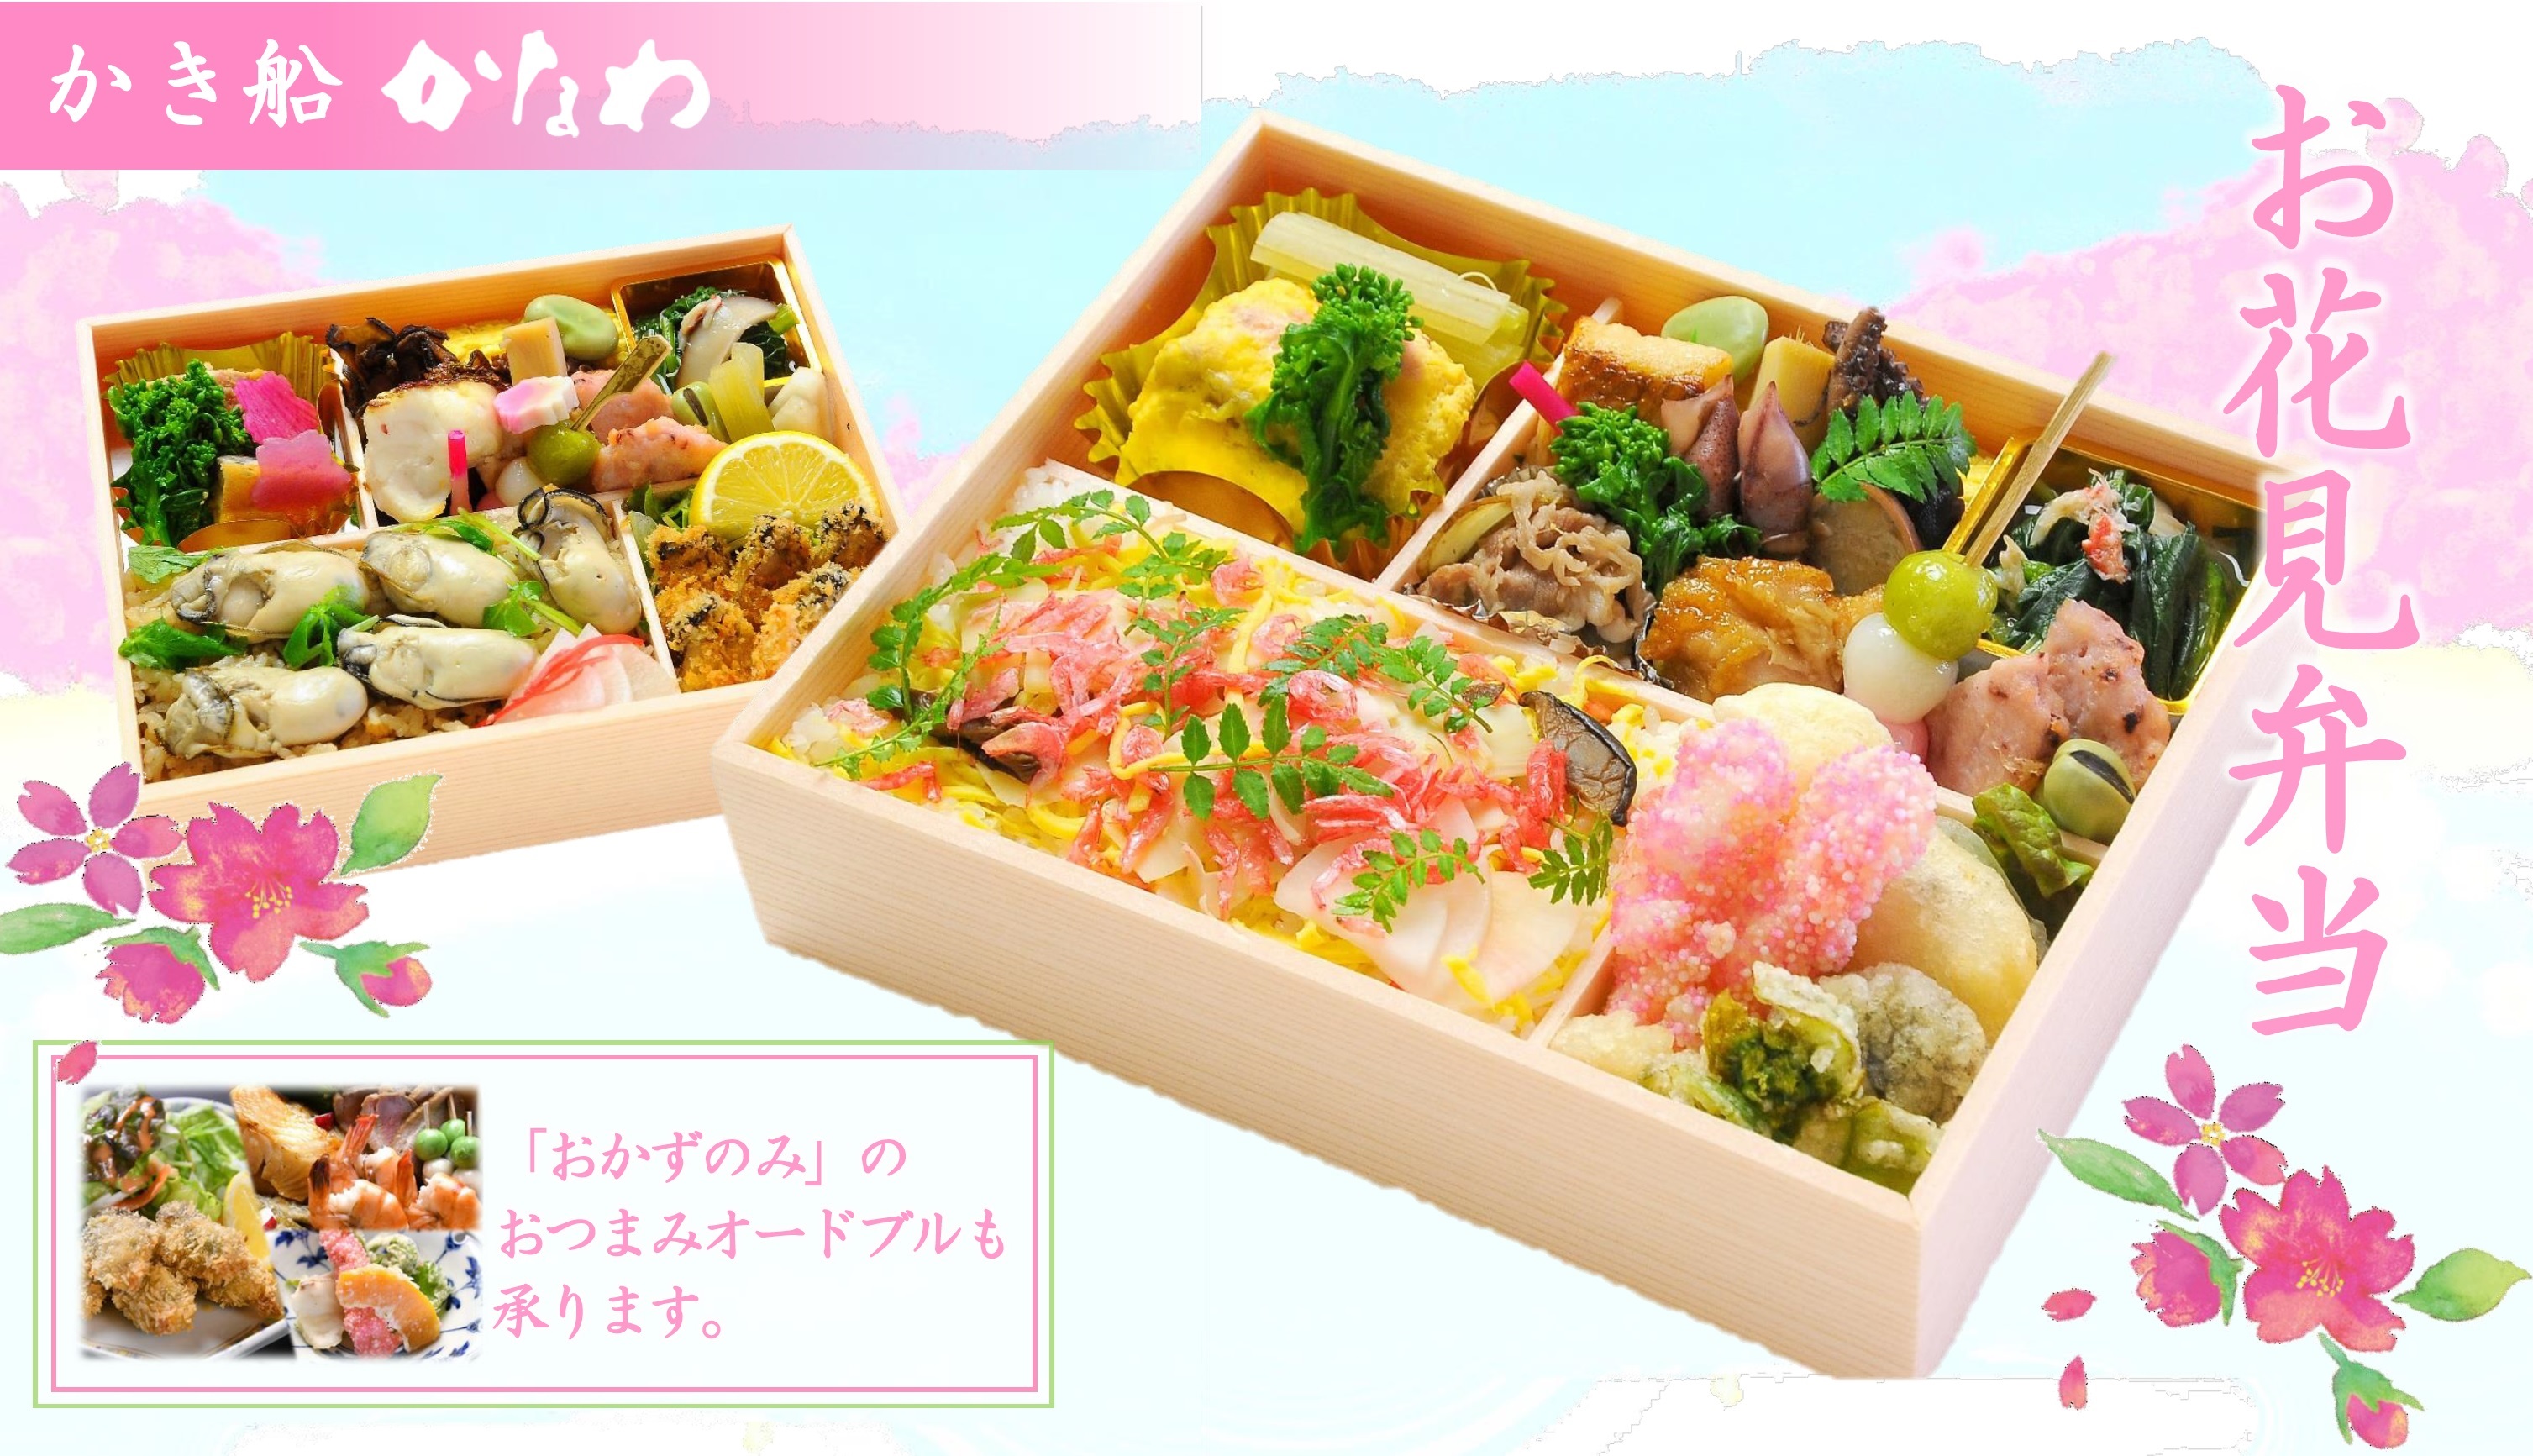 かき船かなわ Asseかなわ 桜の季節 かなわのお花見弁当はいかがでしょうか 牡蠣 かき 料理 広島料理 かなわ